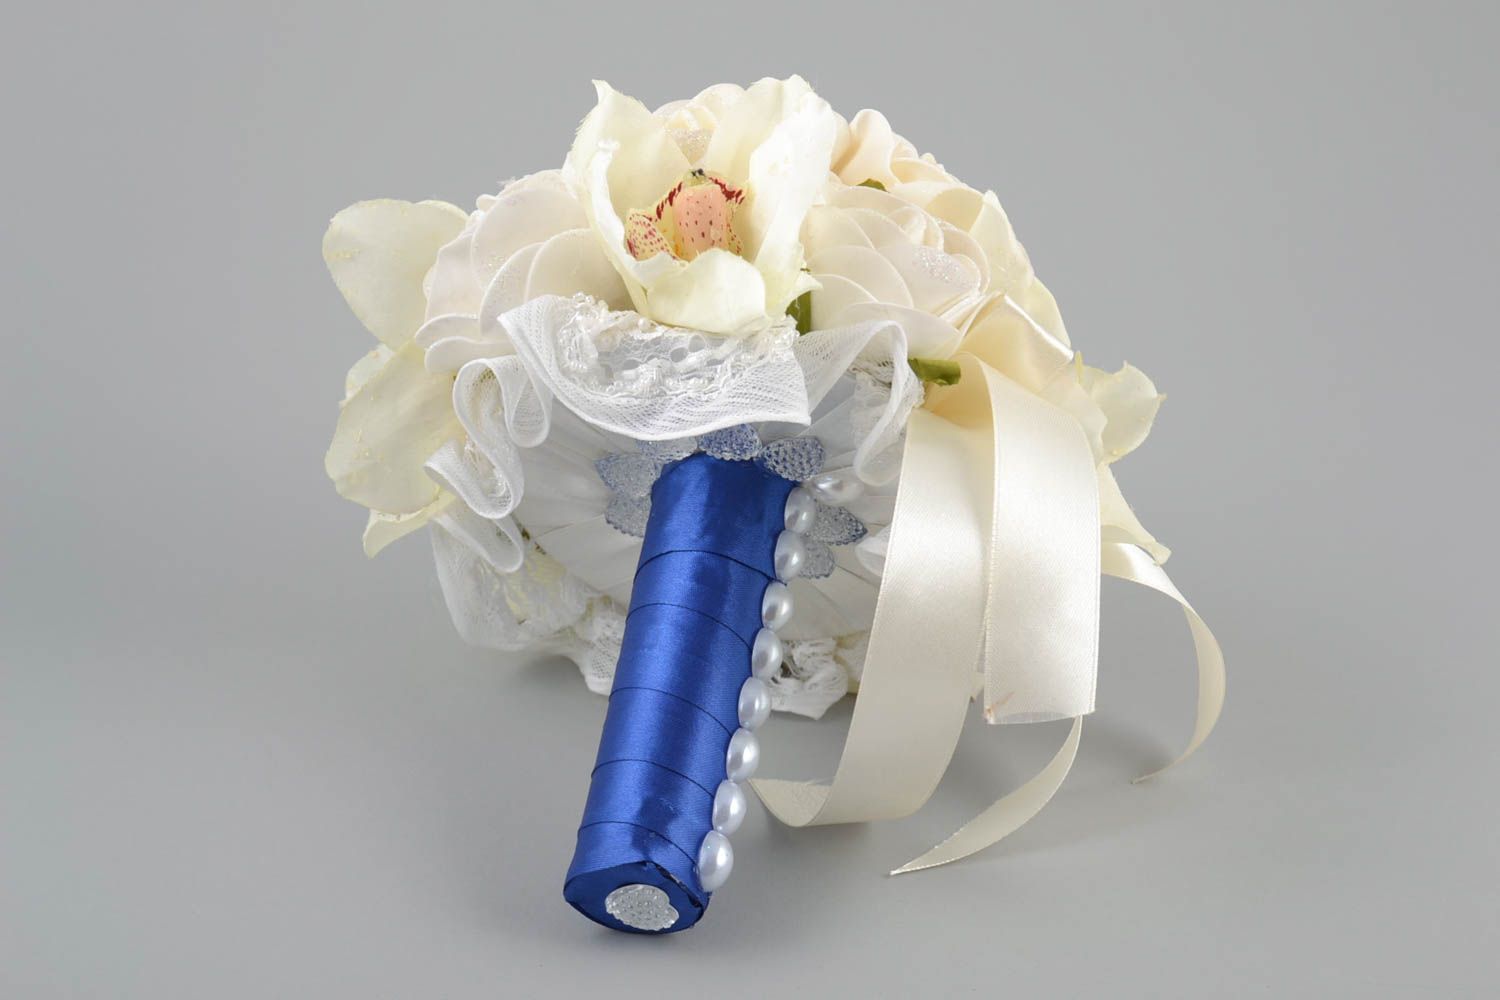 Свадебный букет из фоамирана белый на синей ножке красивый с лентами хэнд мейд фото 4